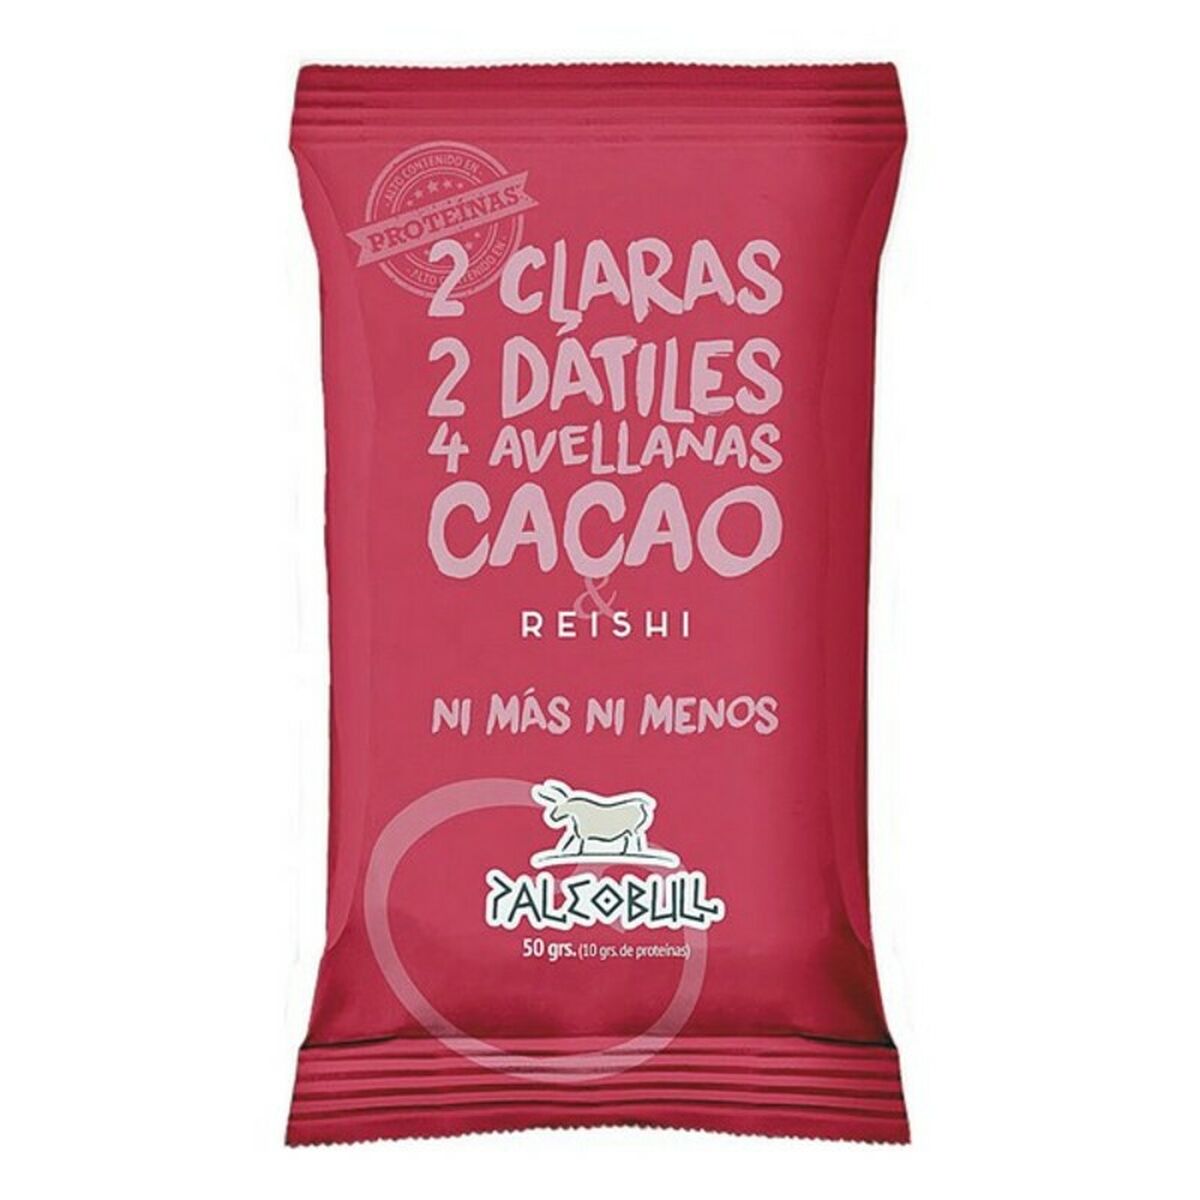 Petite barre énergétique Paleobull Barrita Energética Cacao 50 g (50 gr)